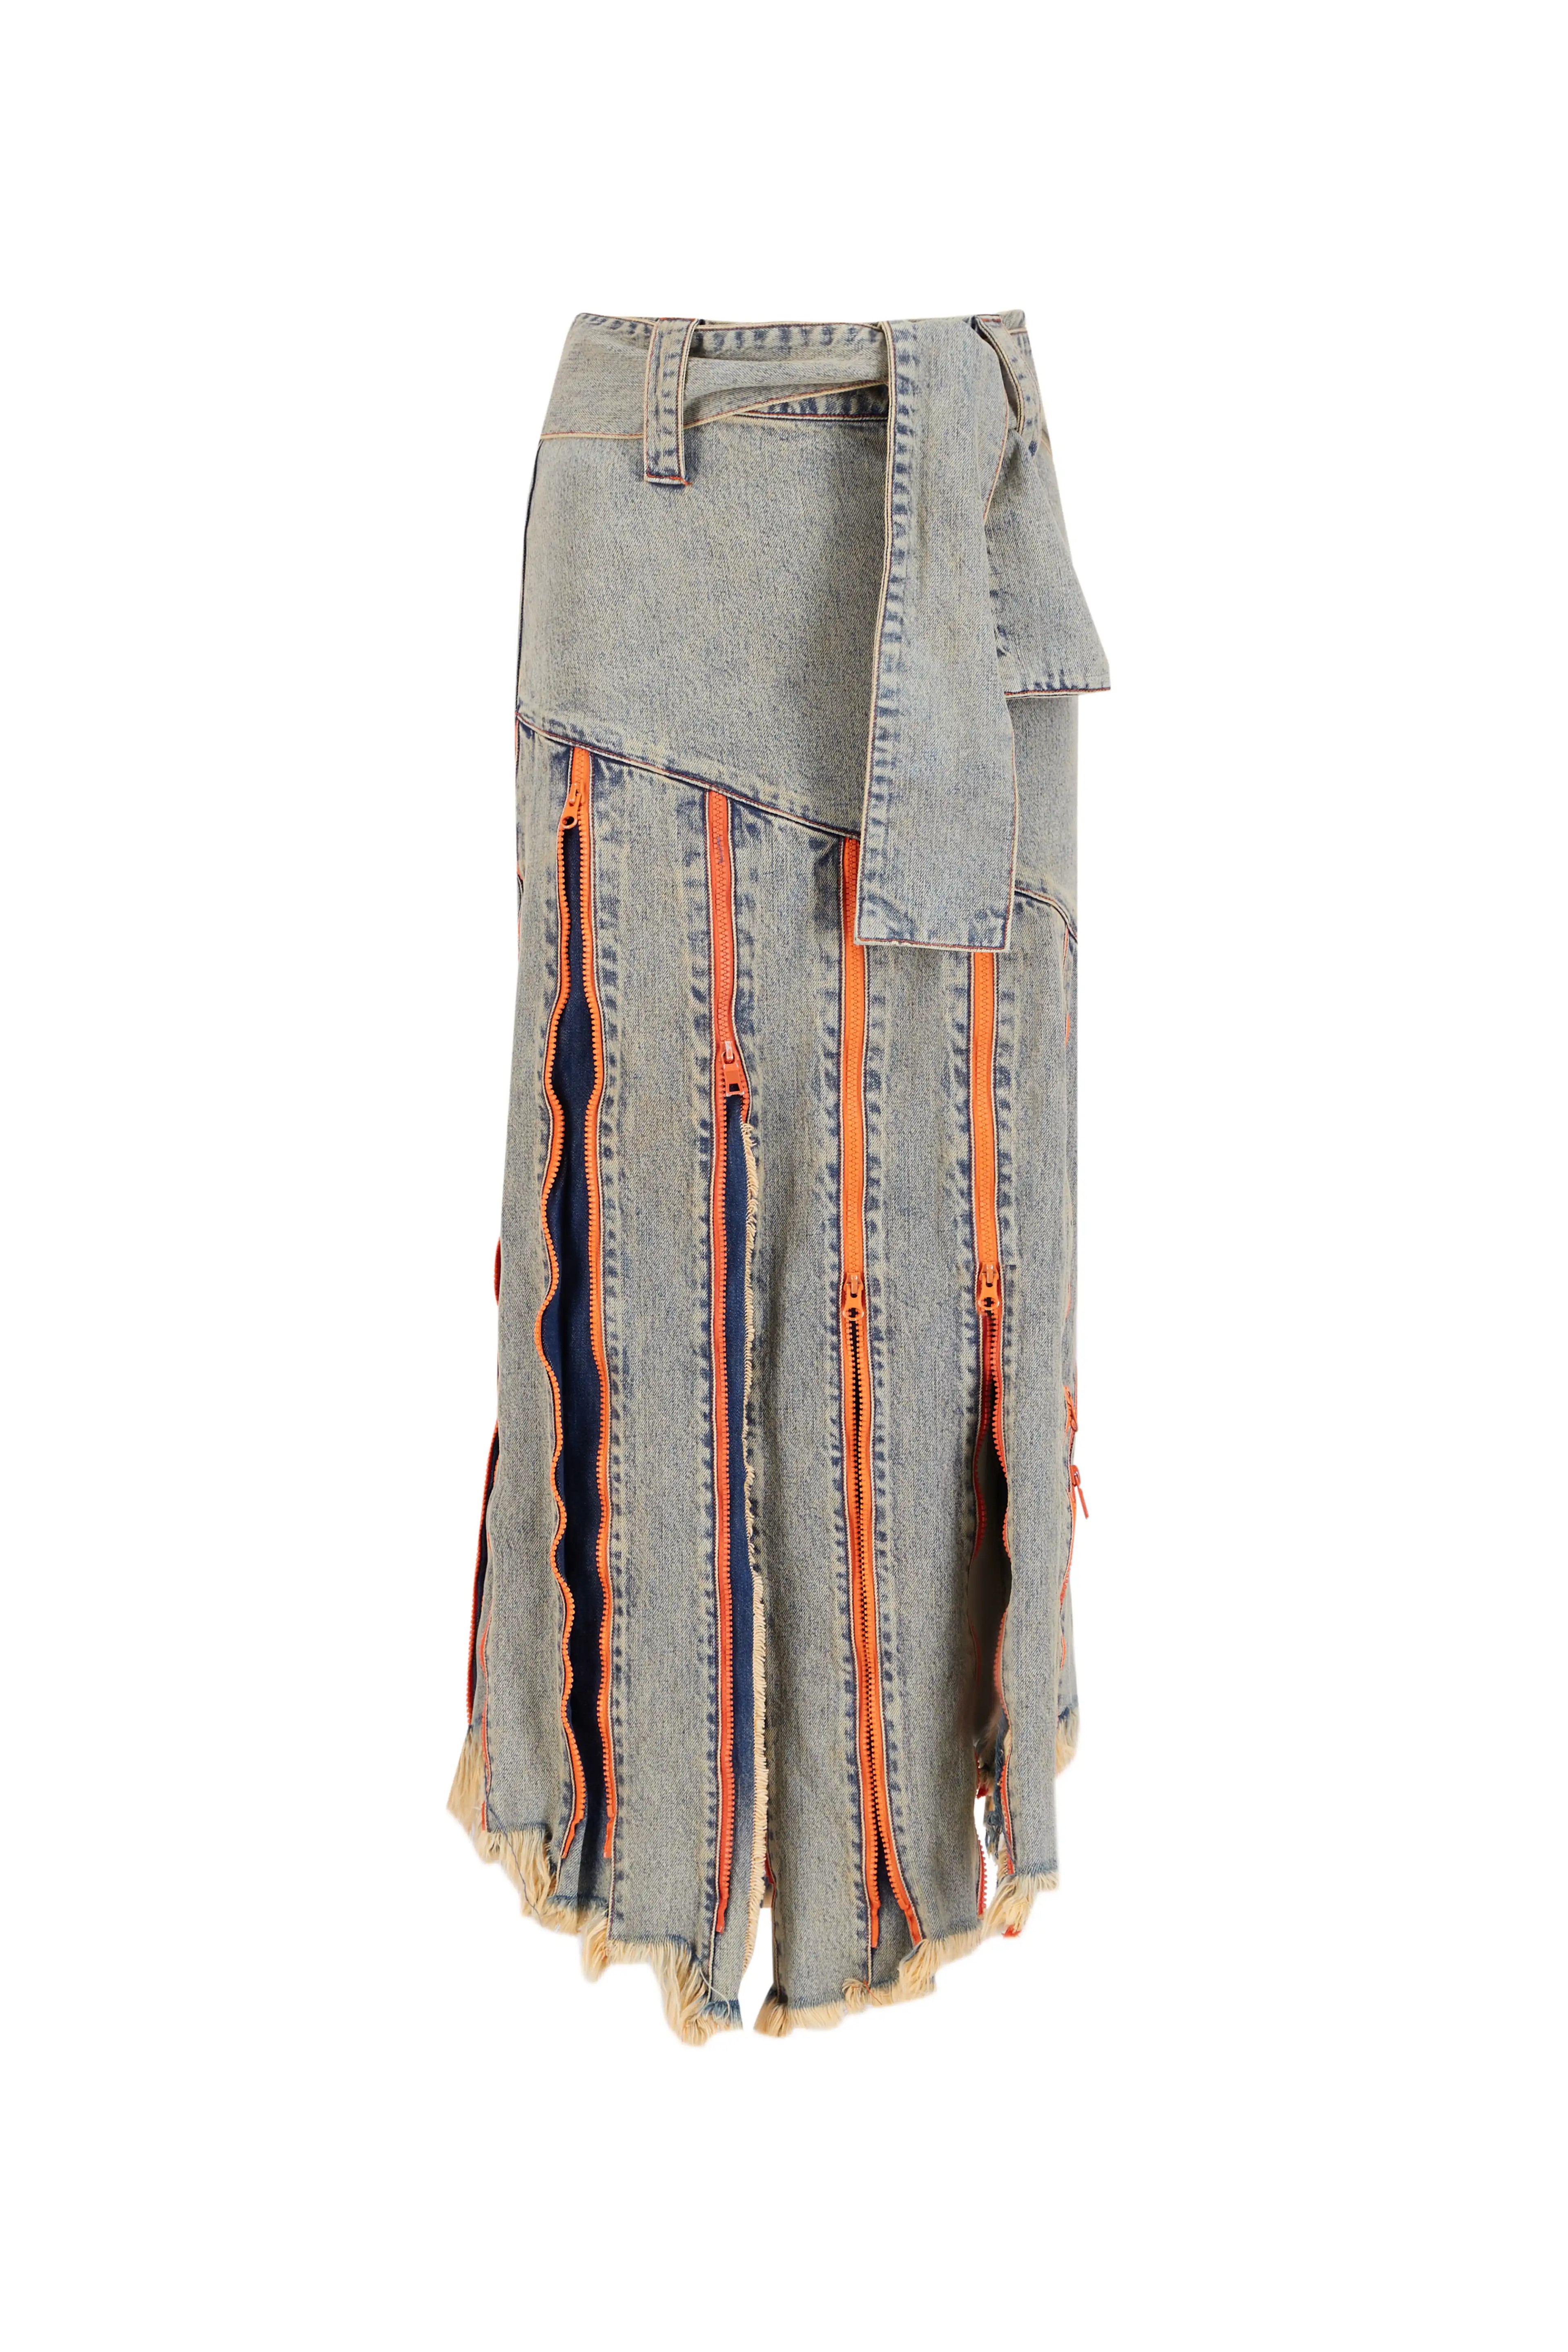 Tribal Bride Constructed Gray Denim Skirt 